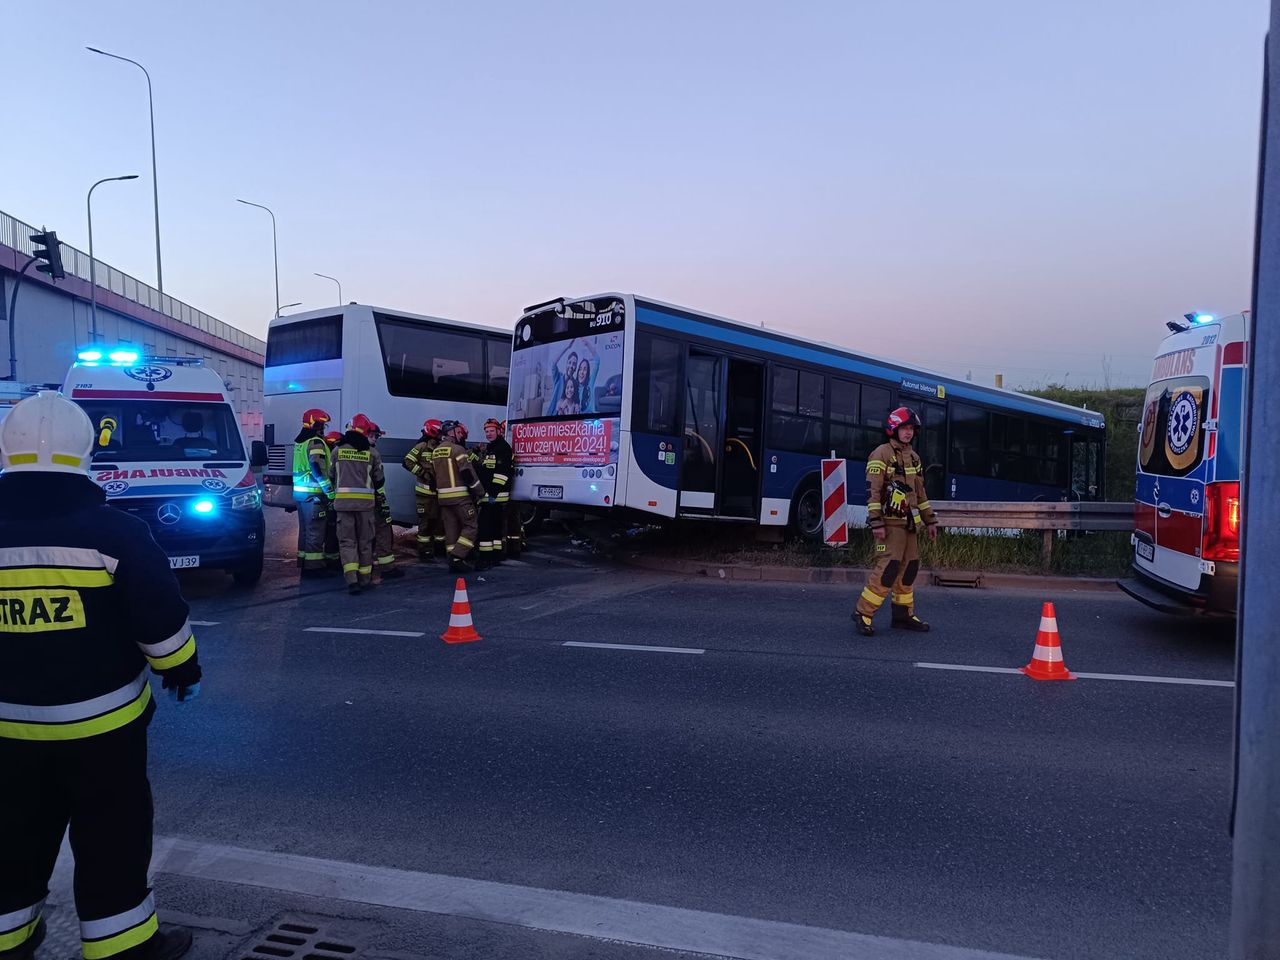 W Krakowie zderzyły się autobusy. Tragiczny wypadek